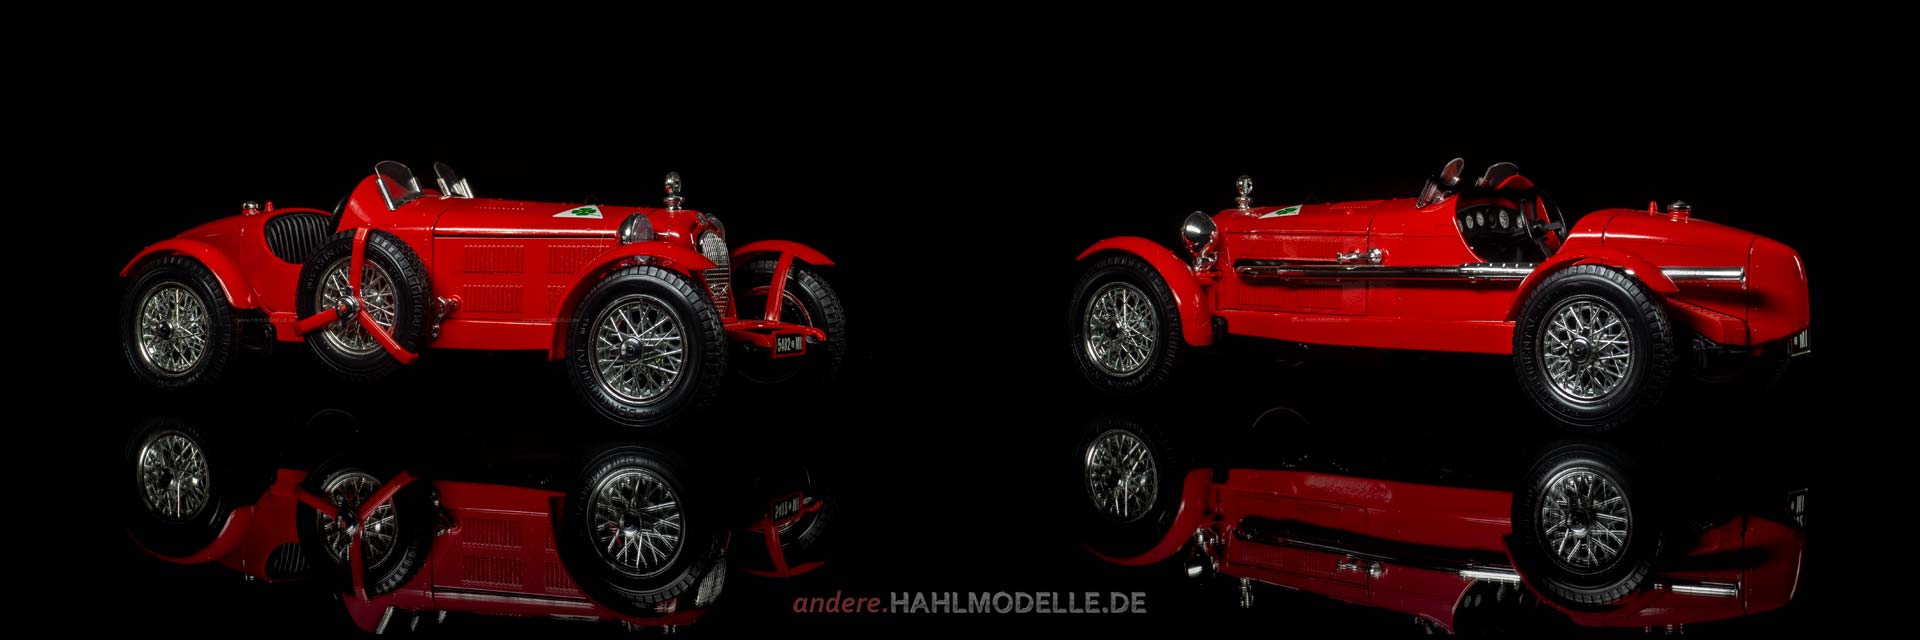 Alfa Romeo 8C 2300 Monza | Roadster | Bburago | 1:18 | www.andere.hahlmodelle.de